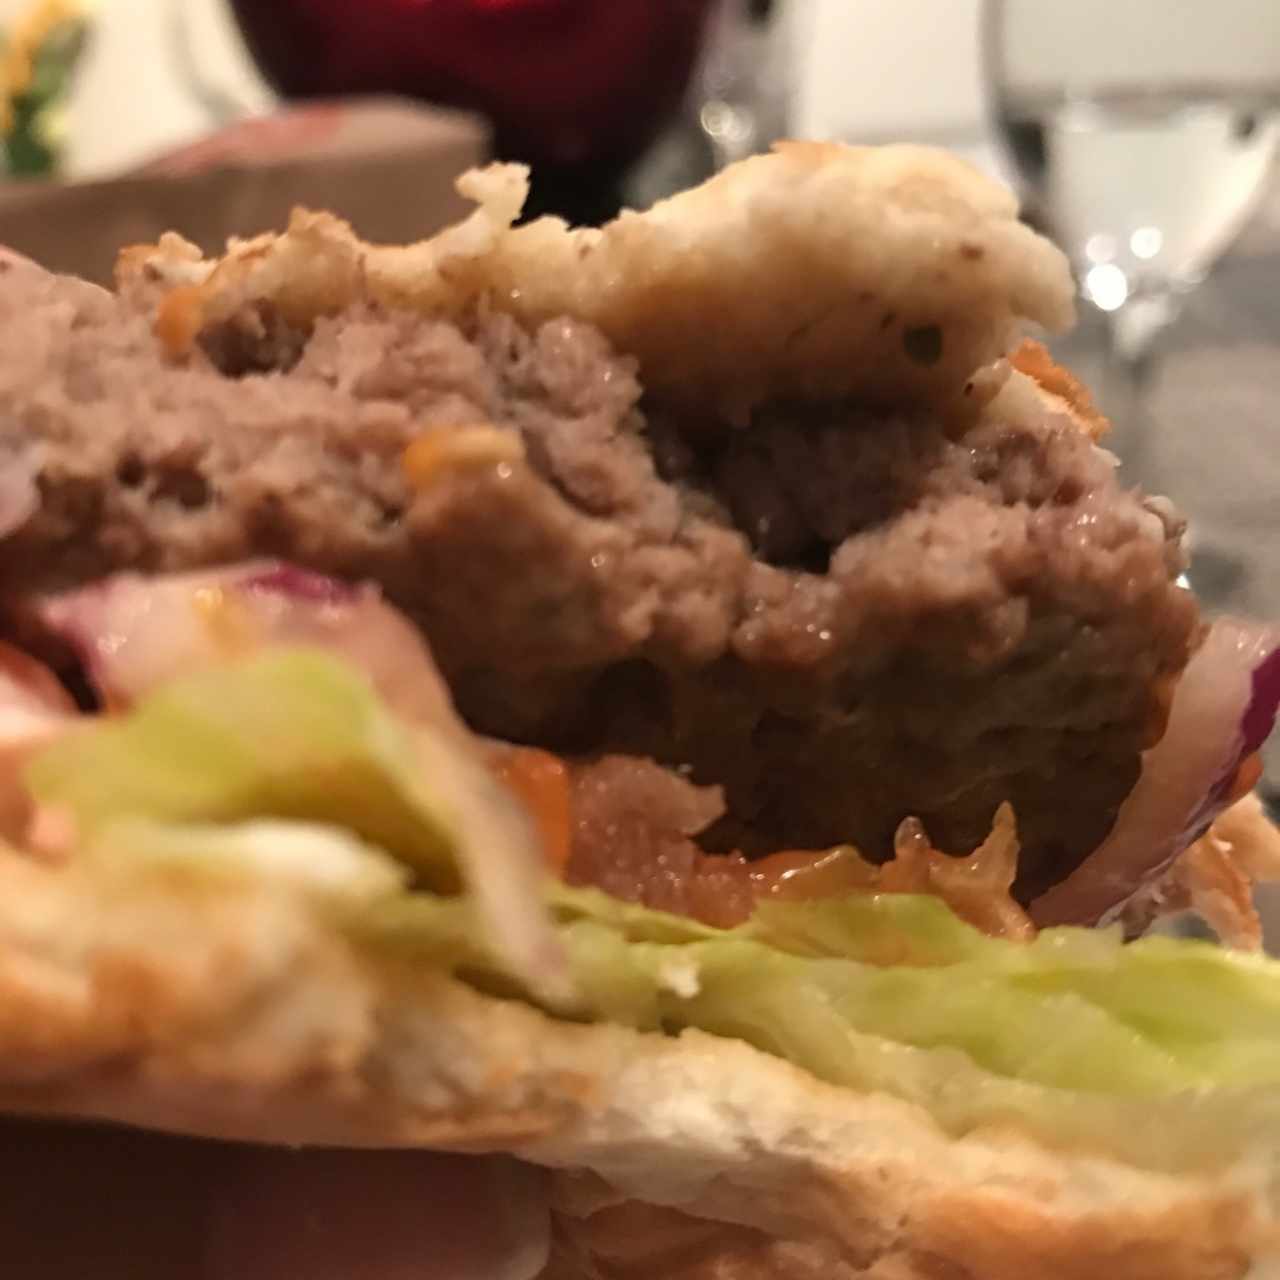 portobello mushroom burger